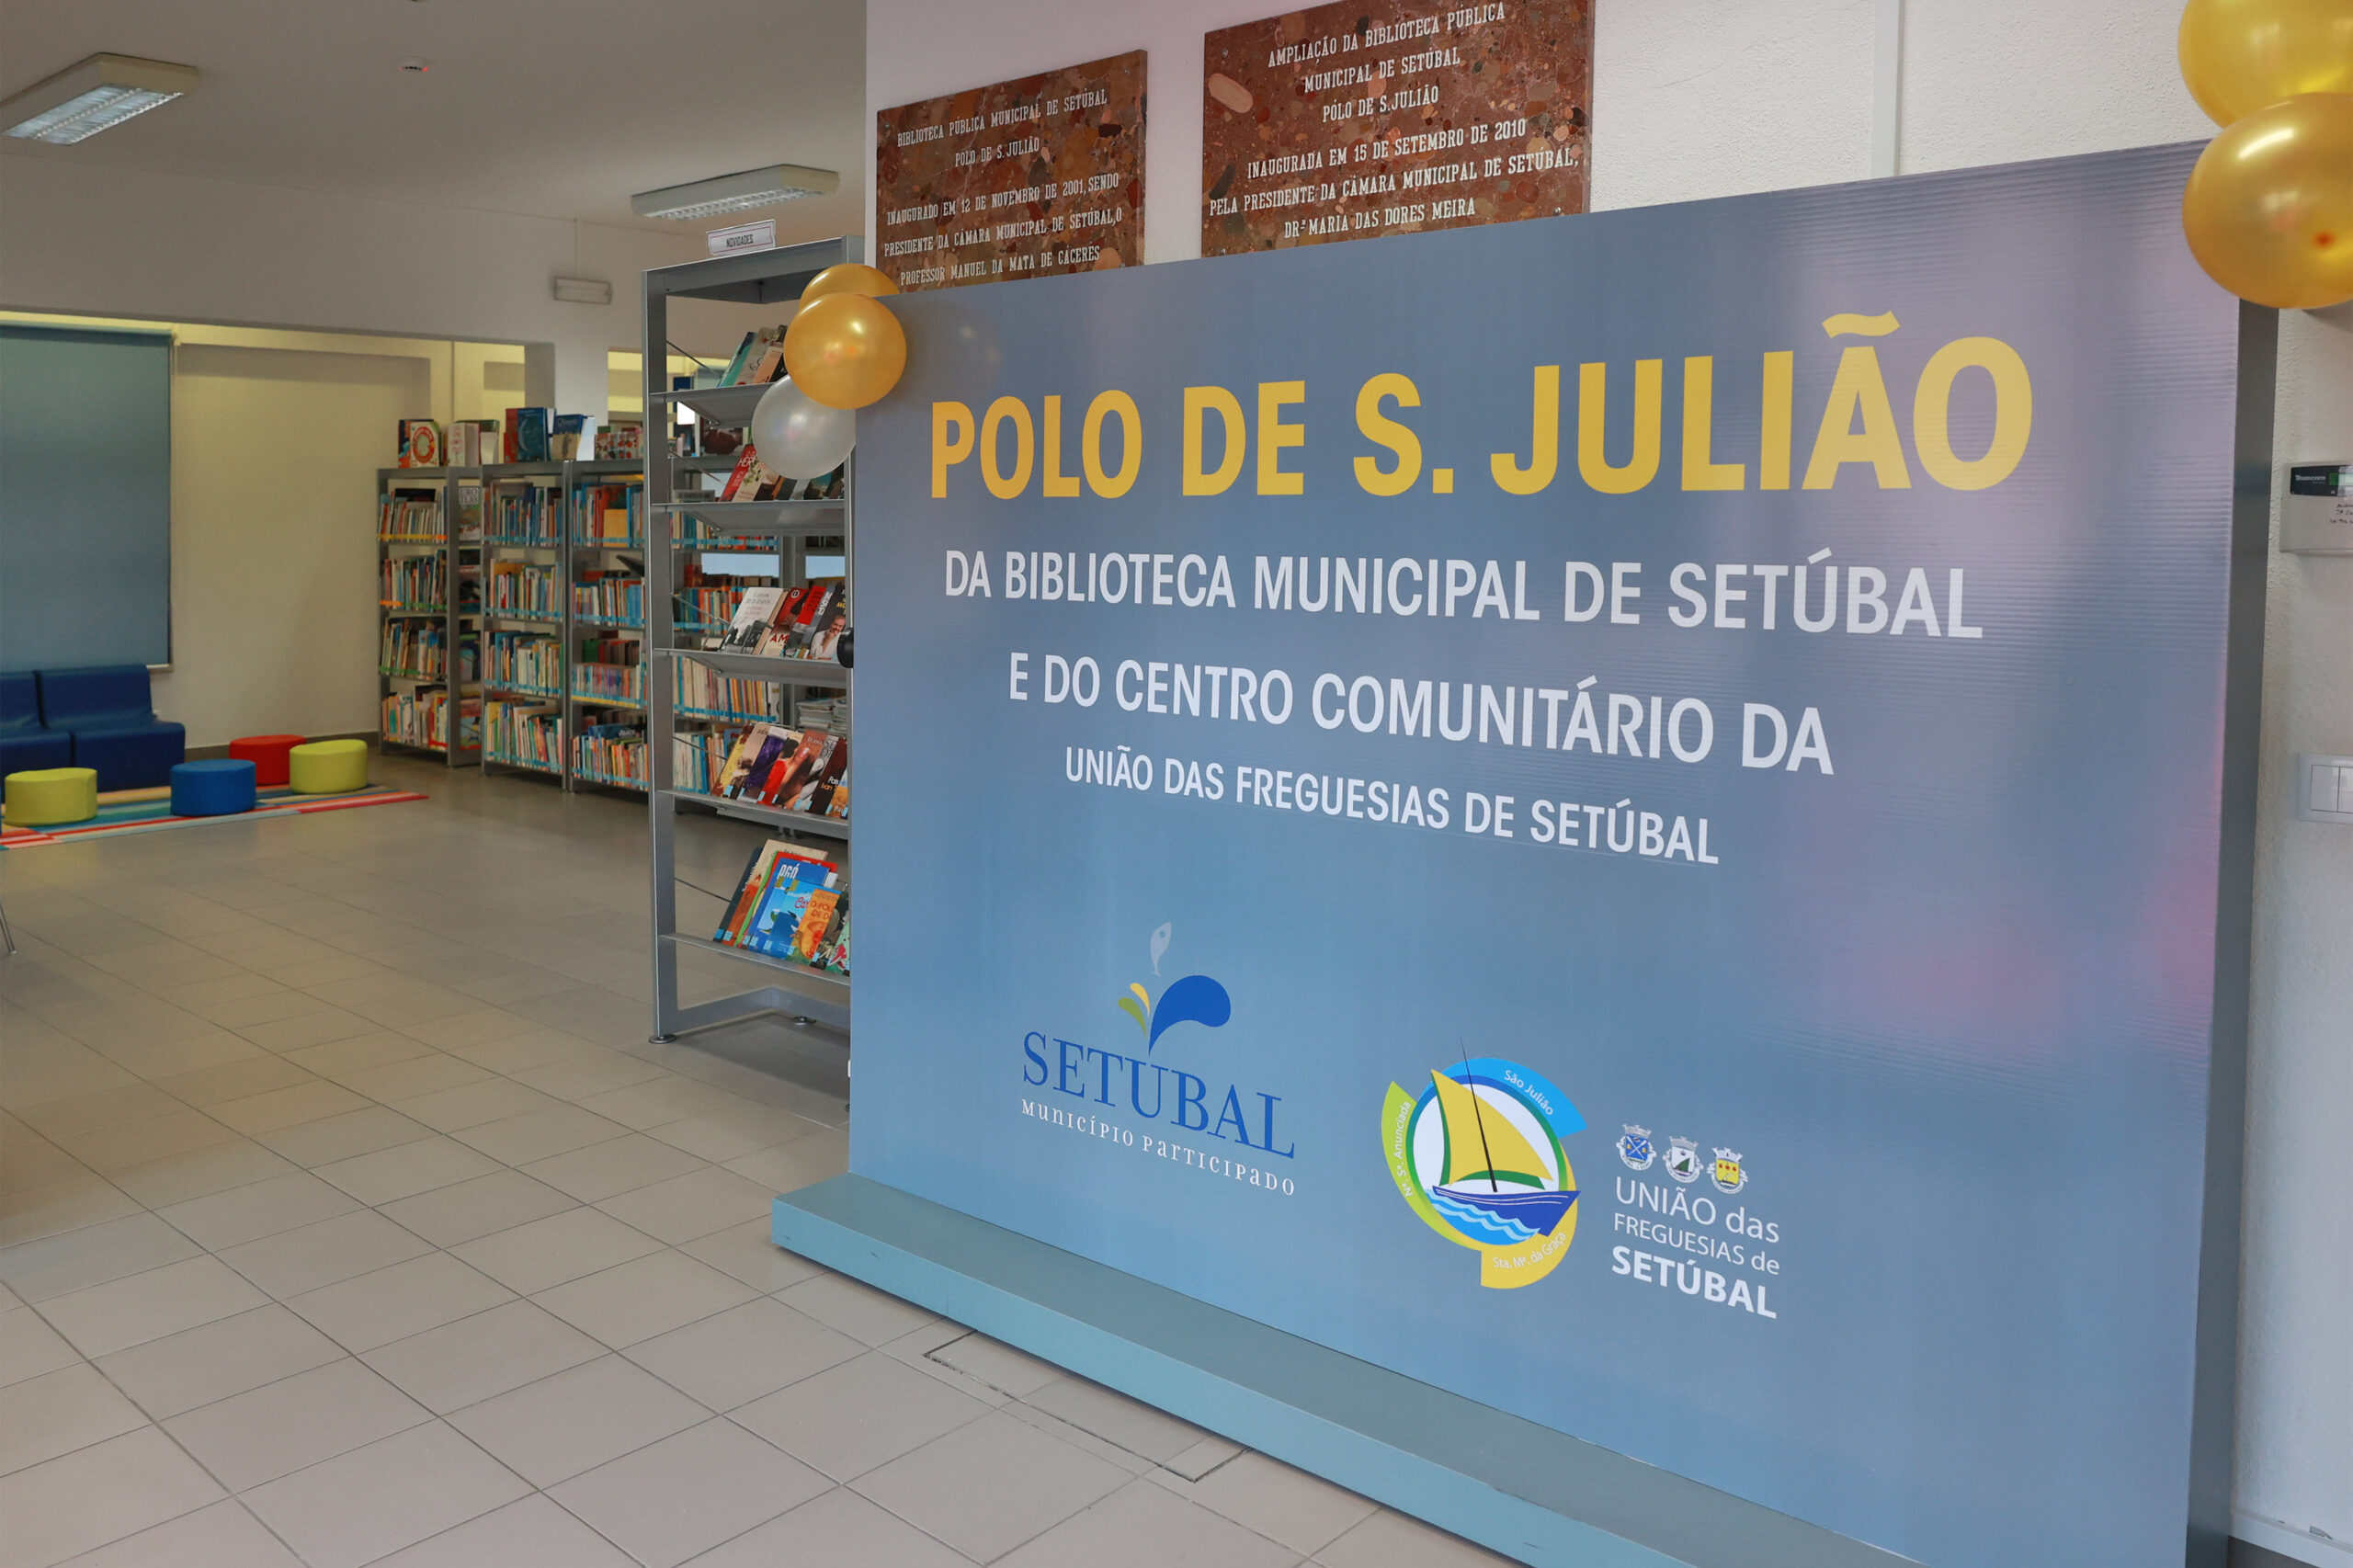 Polo de São Julião do Centro Comunitário da União das Freguesias de Setúbal - inauguração